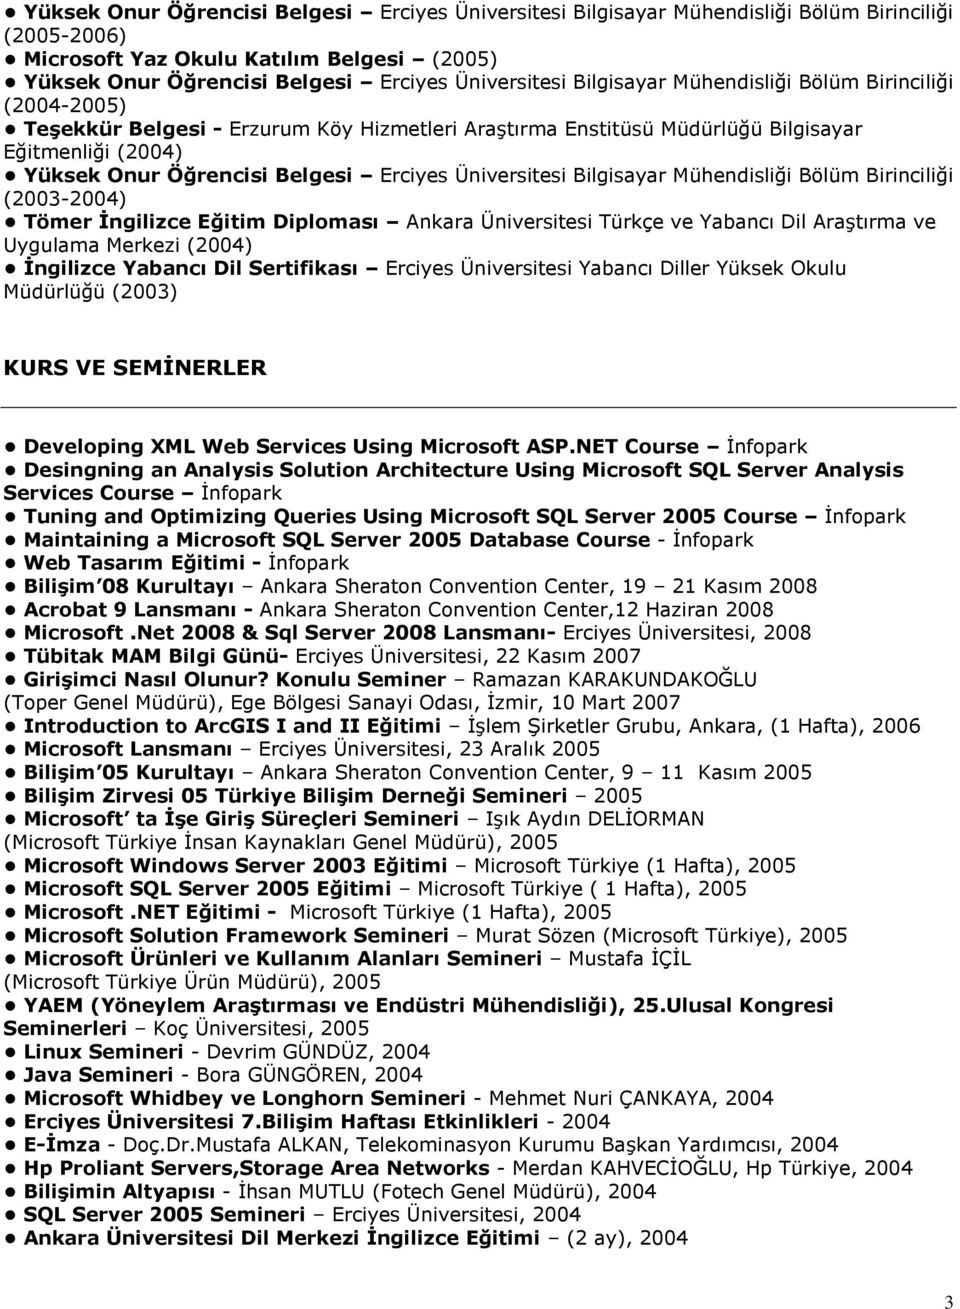 Üniversitesi Bilgisayar Mühendisliği Bölüm Birinciliği (2003-2004) Tömer Ġngilizce Eğitim Diploması Ankara Üniversitesi Türkçe ve Yabancı Dil AraĢtırma ve Uygulama Merkezi (2004) Ġngilizce Yabancı